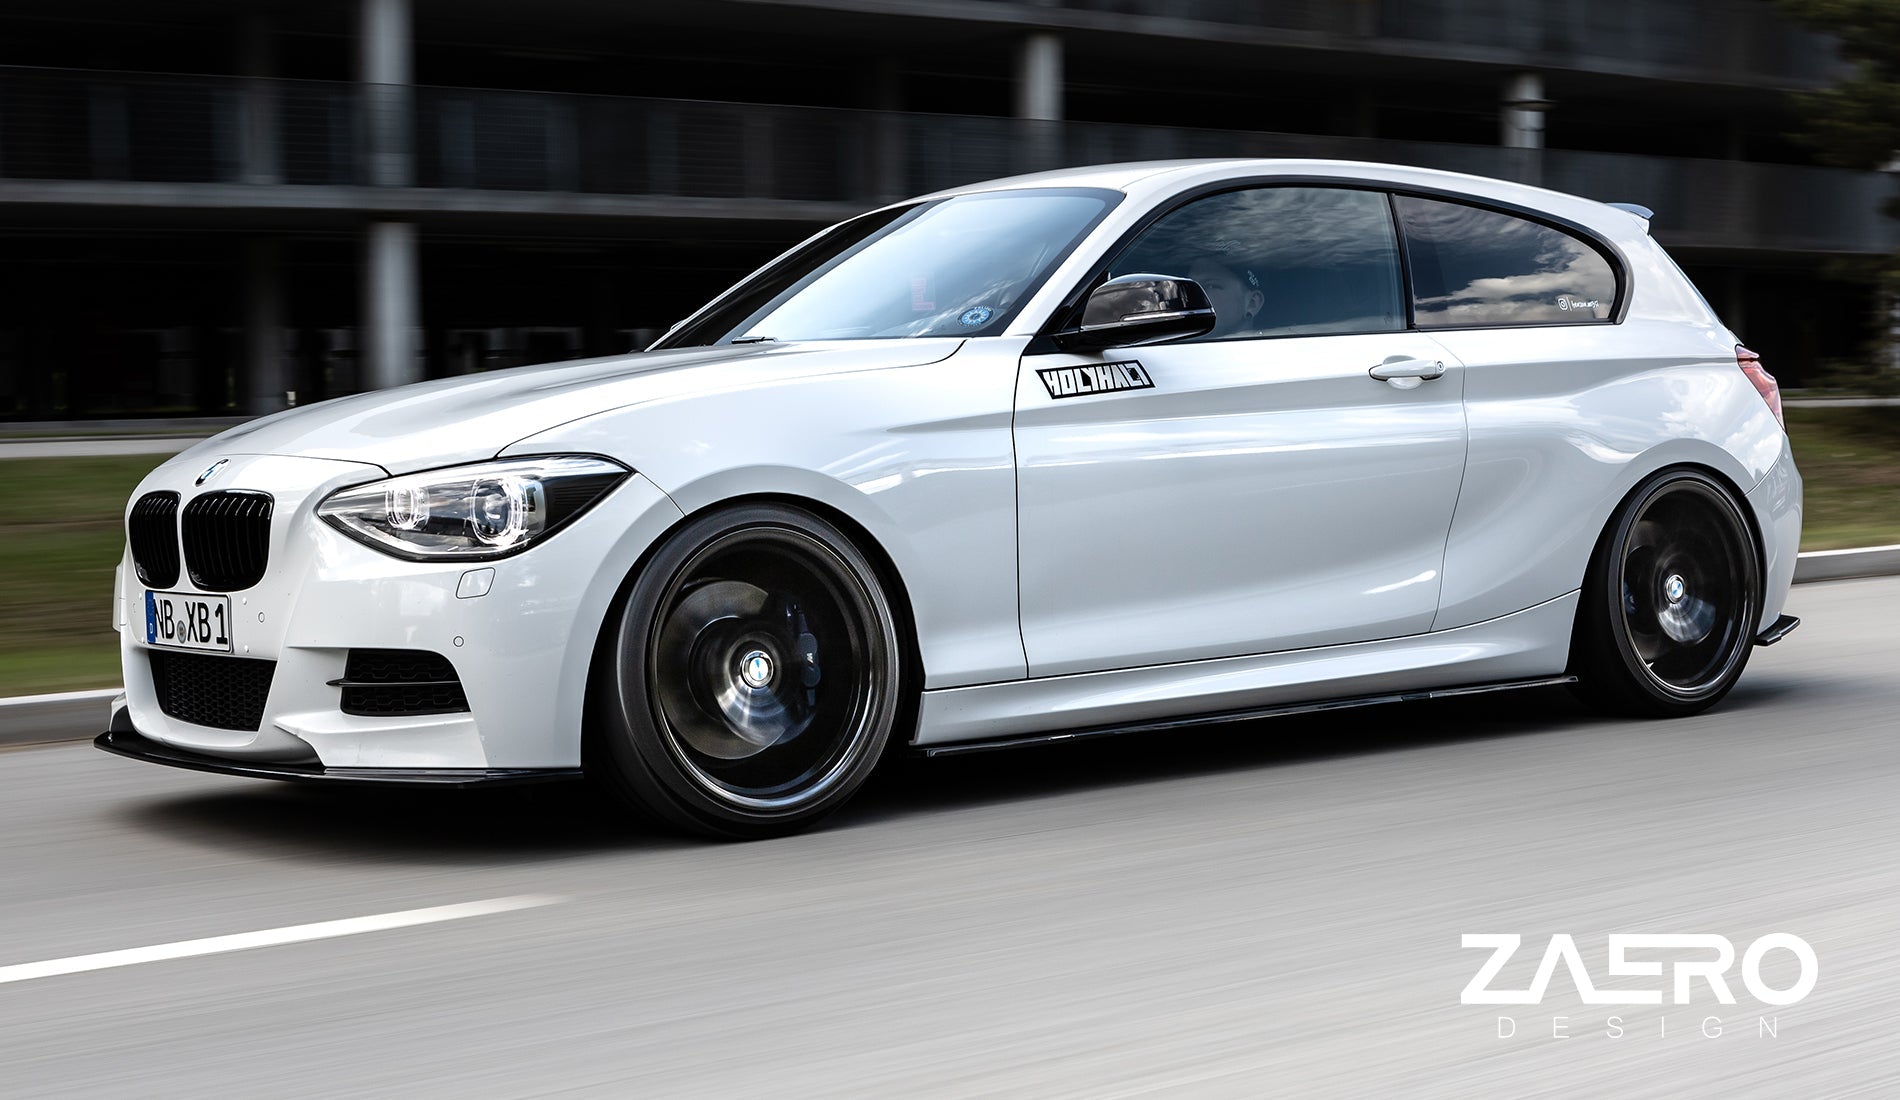 Zaero Designs  EVO-1 Front Lip/Splitter for BMW 1 Series F20 (Pre LCI) 12-15 - MODE Auto Concepts